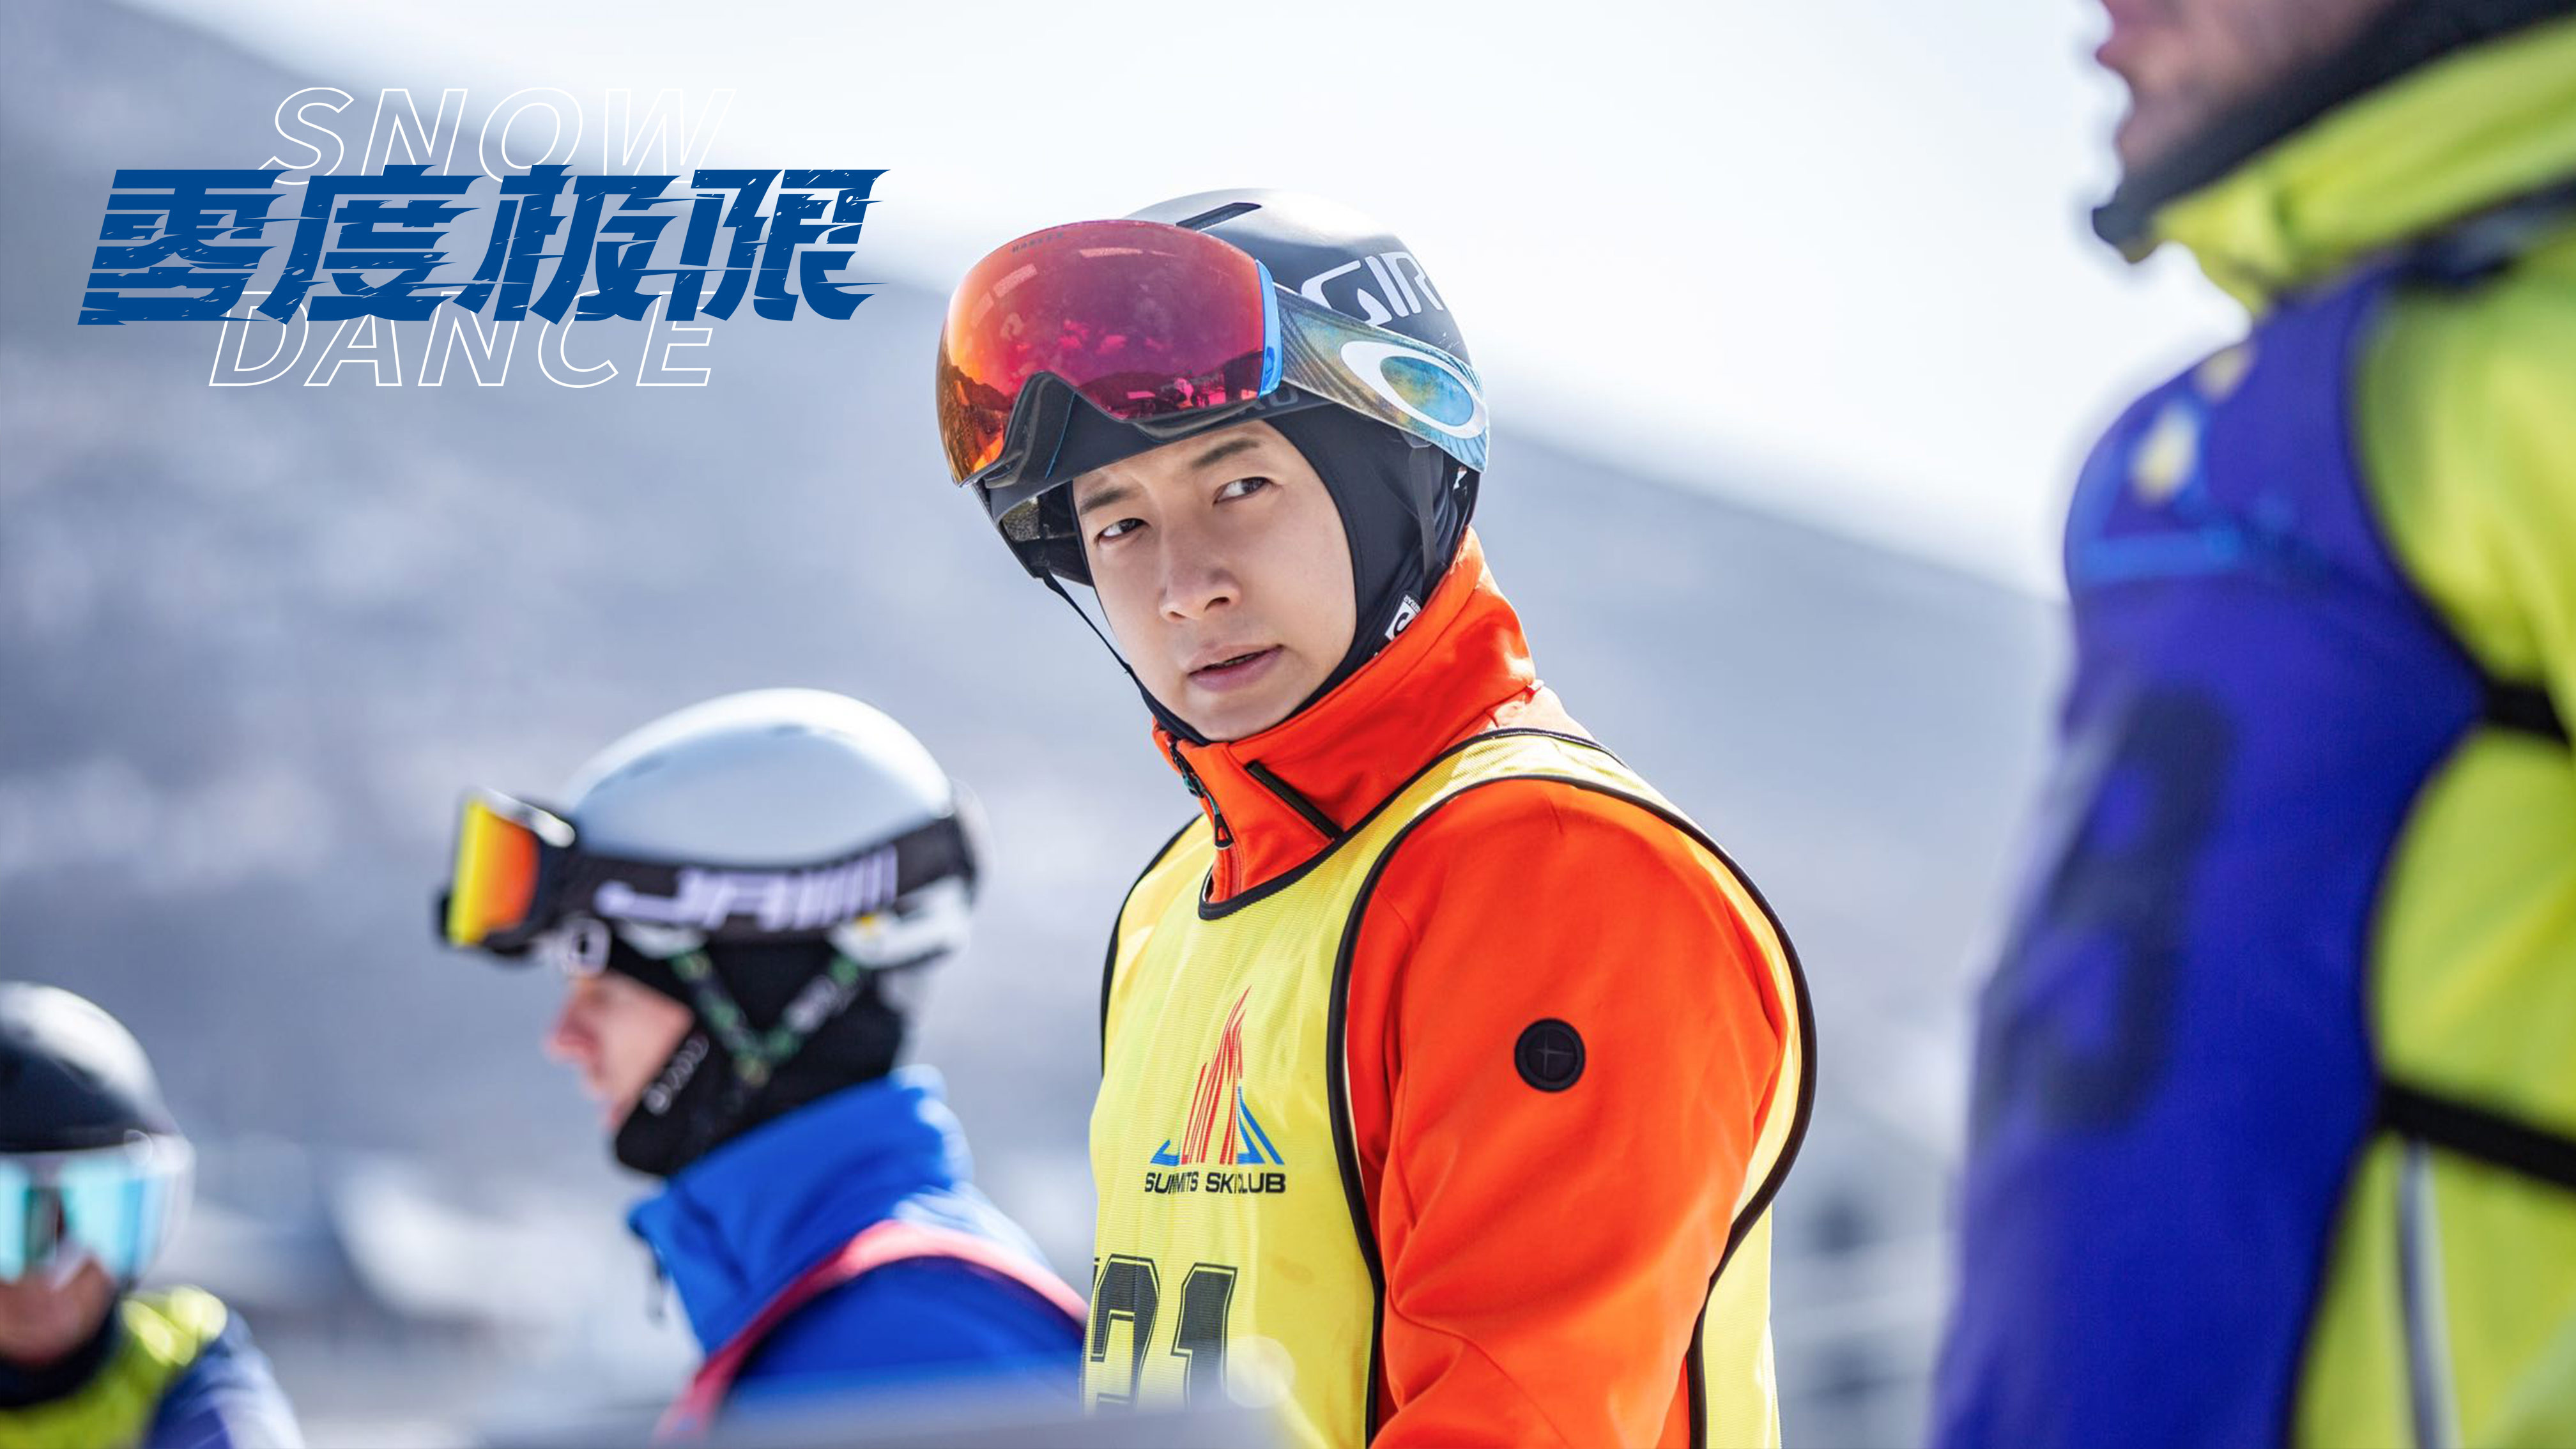 《零度极限》曝幕后特辑 韩庚尹昉挑战高难度滑雪